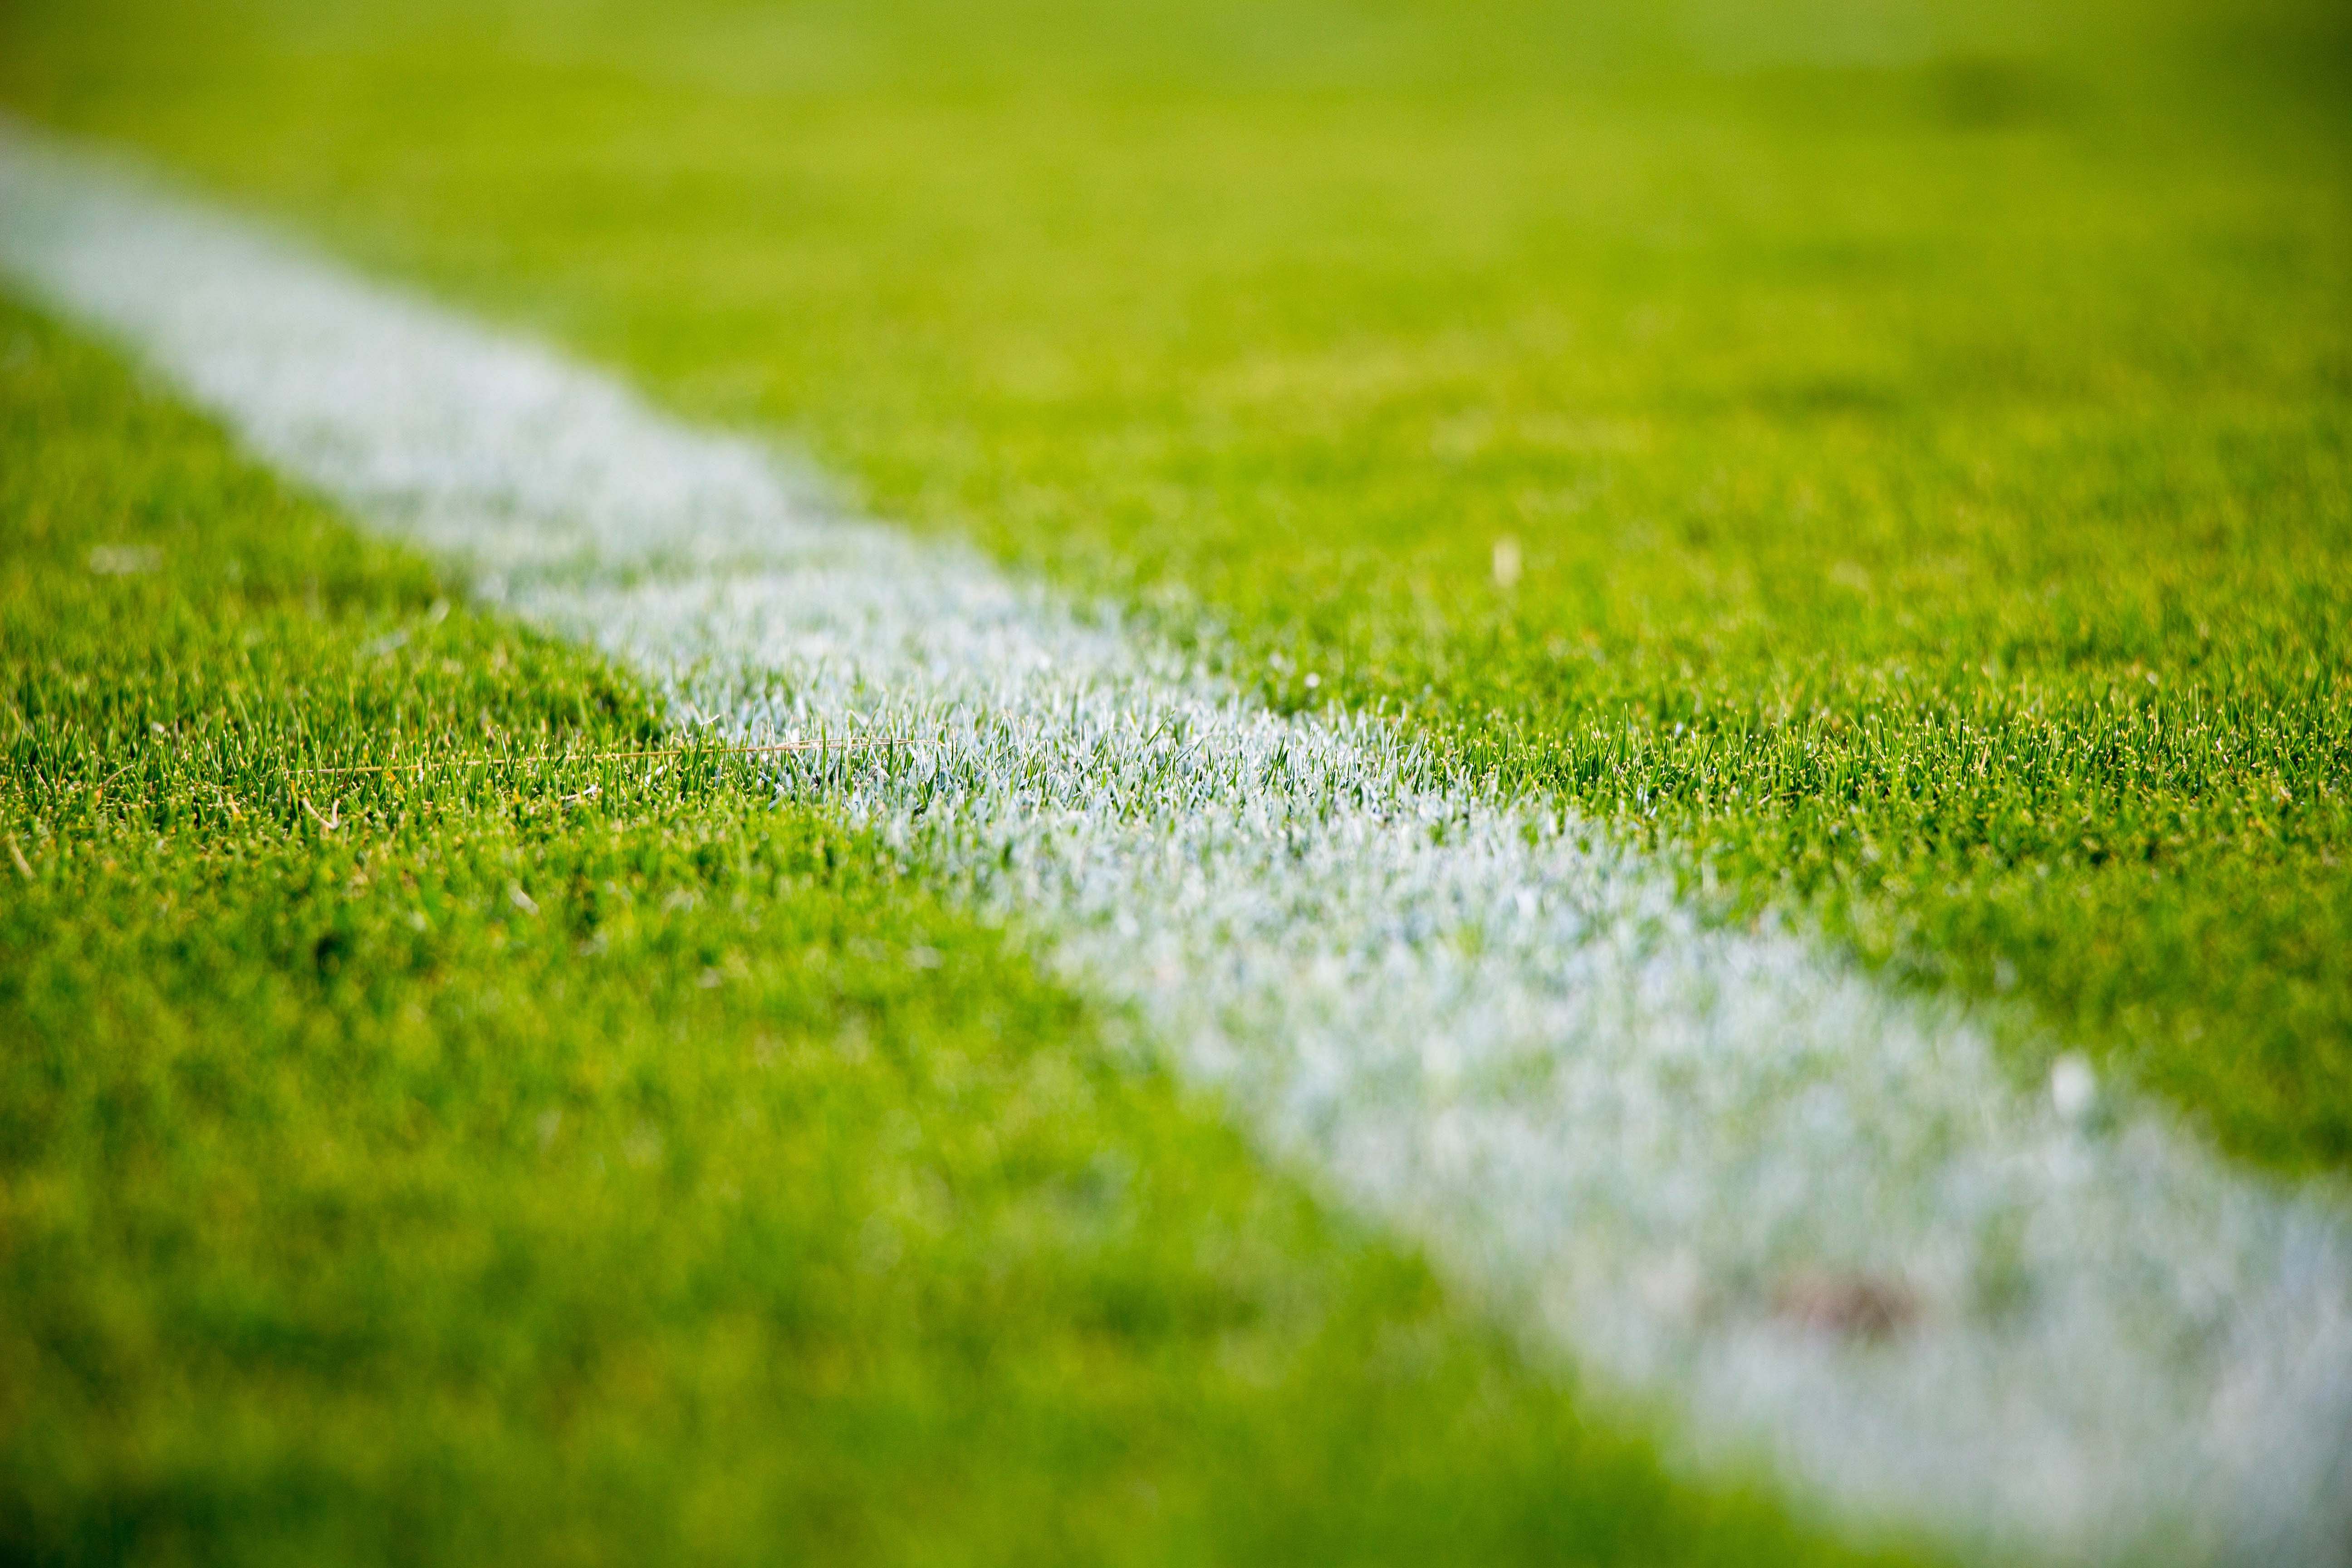 Soccer Line In Green Grass Of Soccer Field Green Lawn Field Pattern For Sport Background